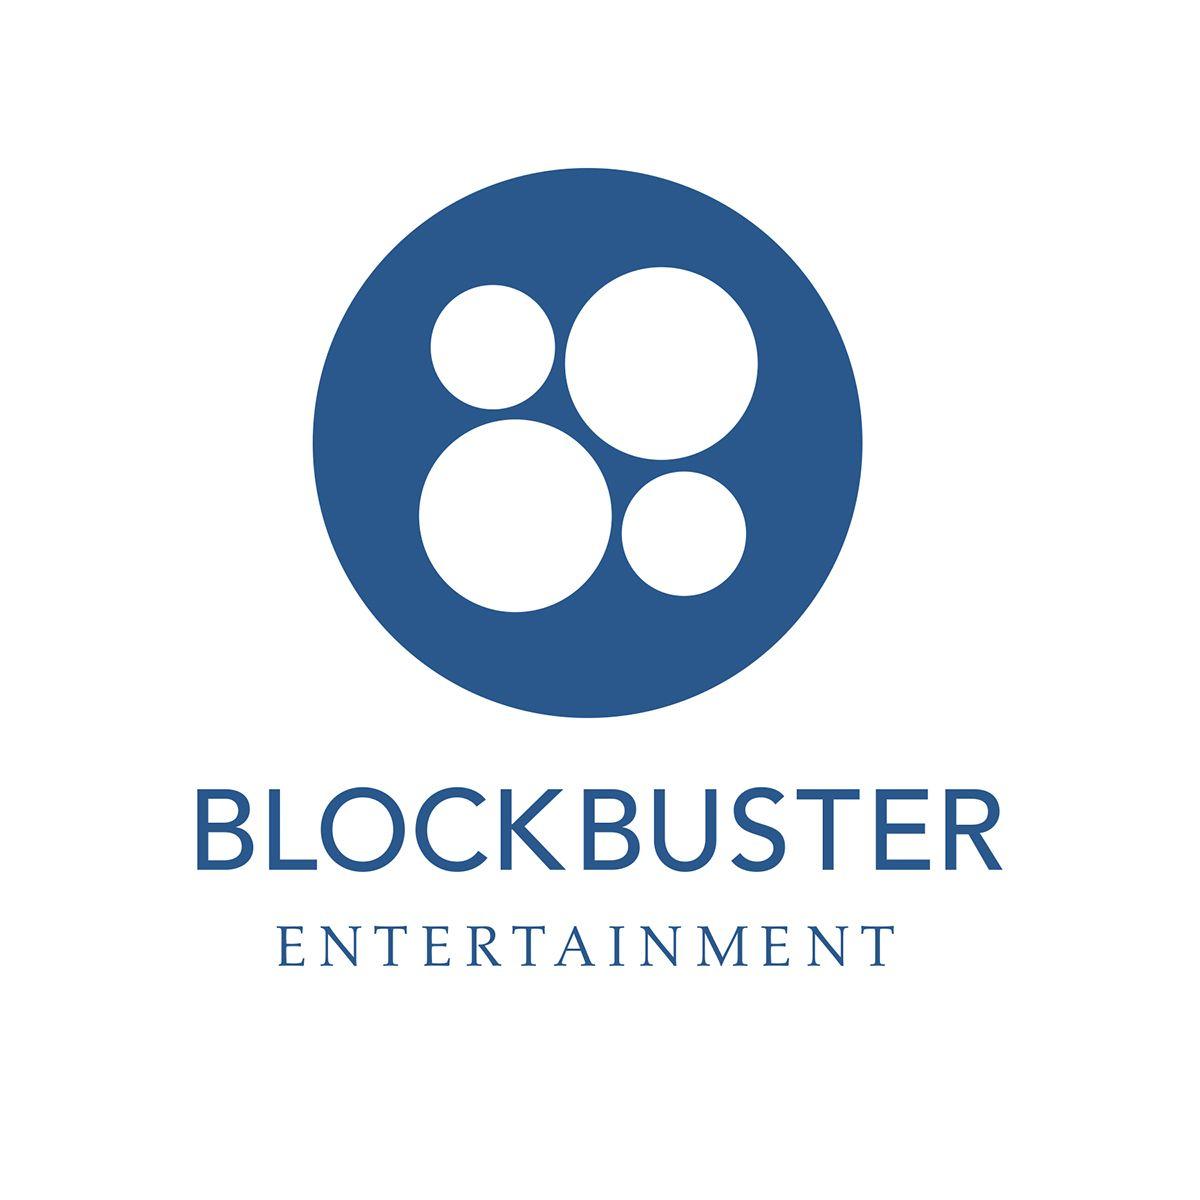 Blockbuster Entertainment Logo - Re-Branding on Behance